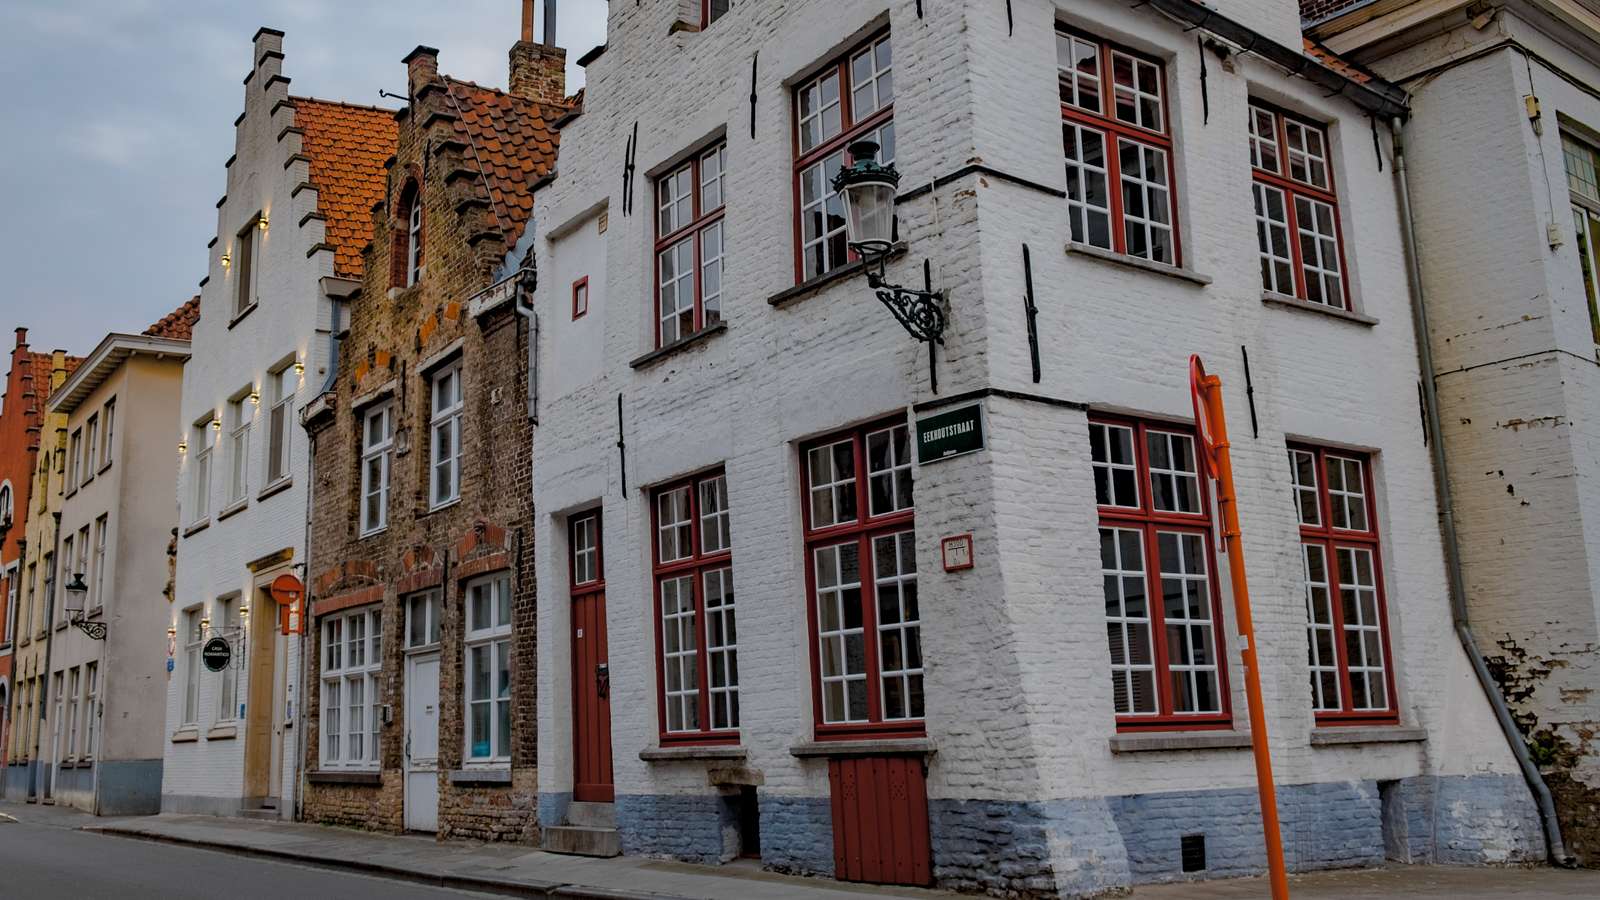 Bruges, Belgium online puzzle